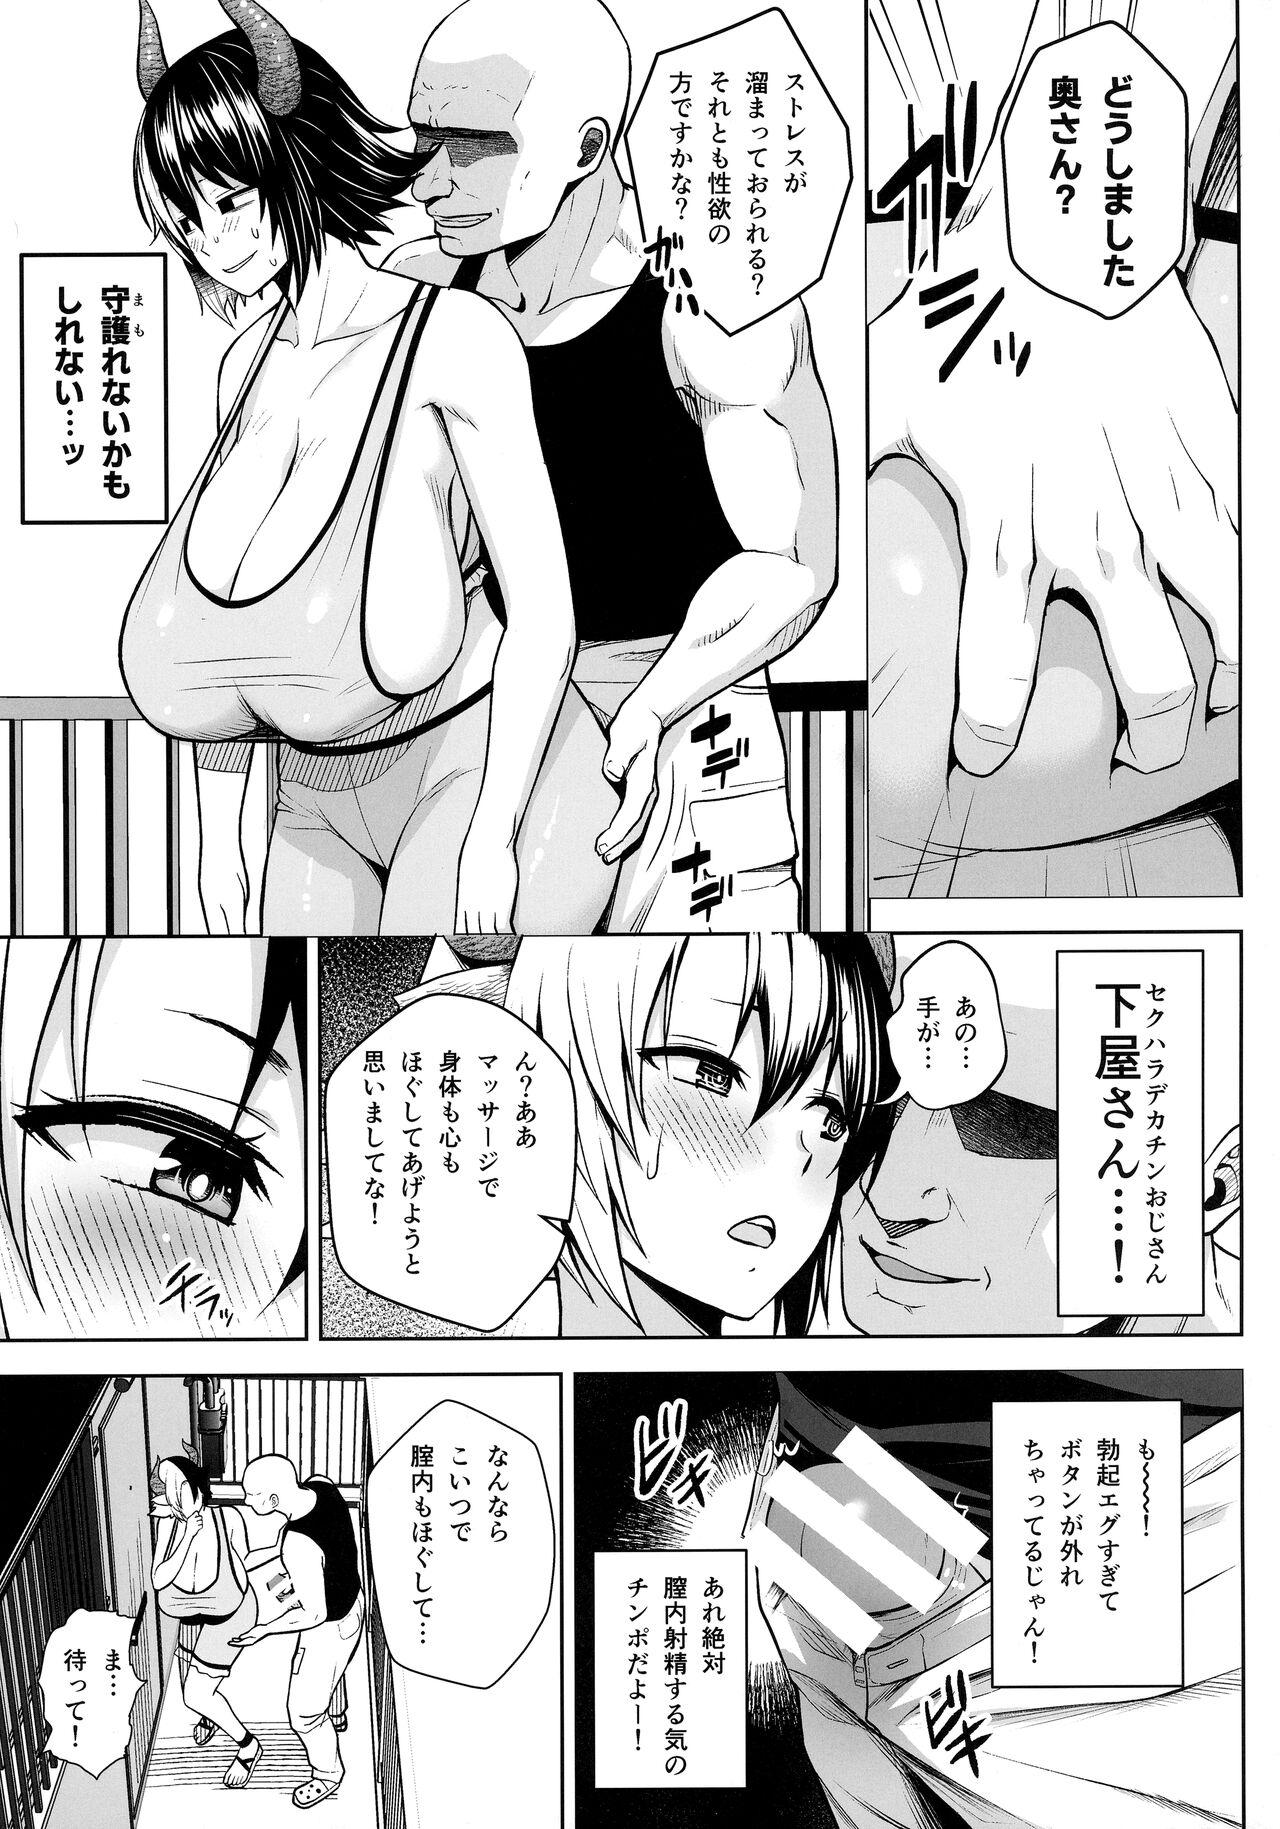 Chacal Oku-san no Oppai ga Dekasugiru noga Warui! 6 - Touhou project Cocksuckers - Page 6